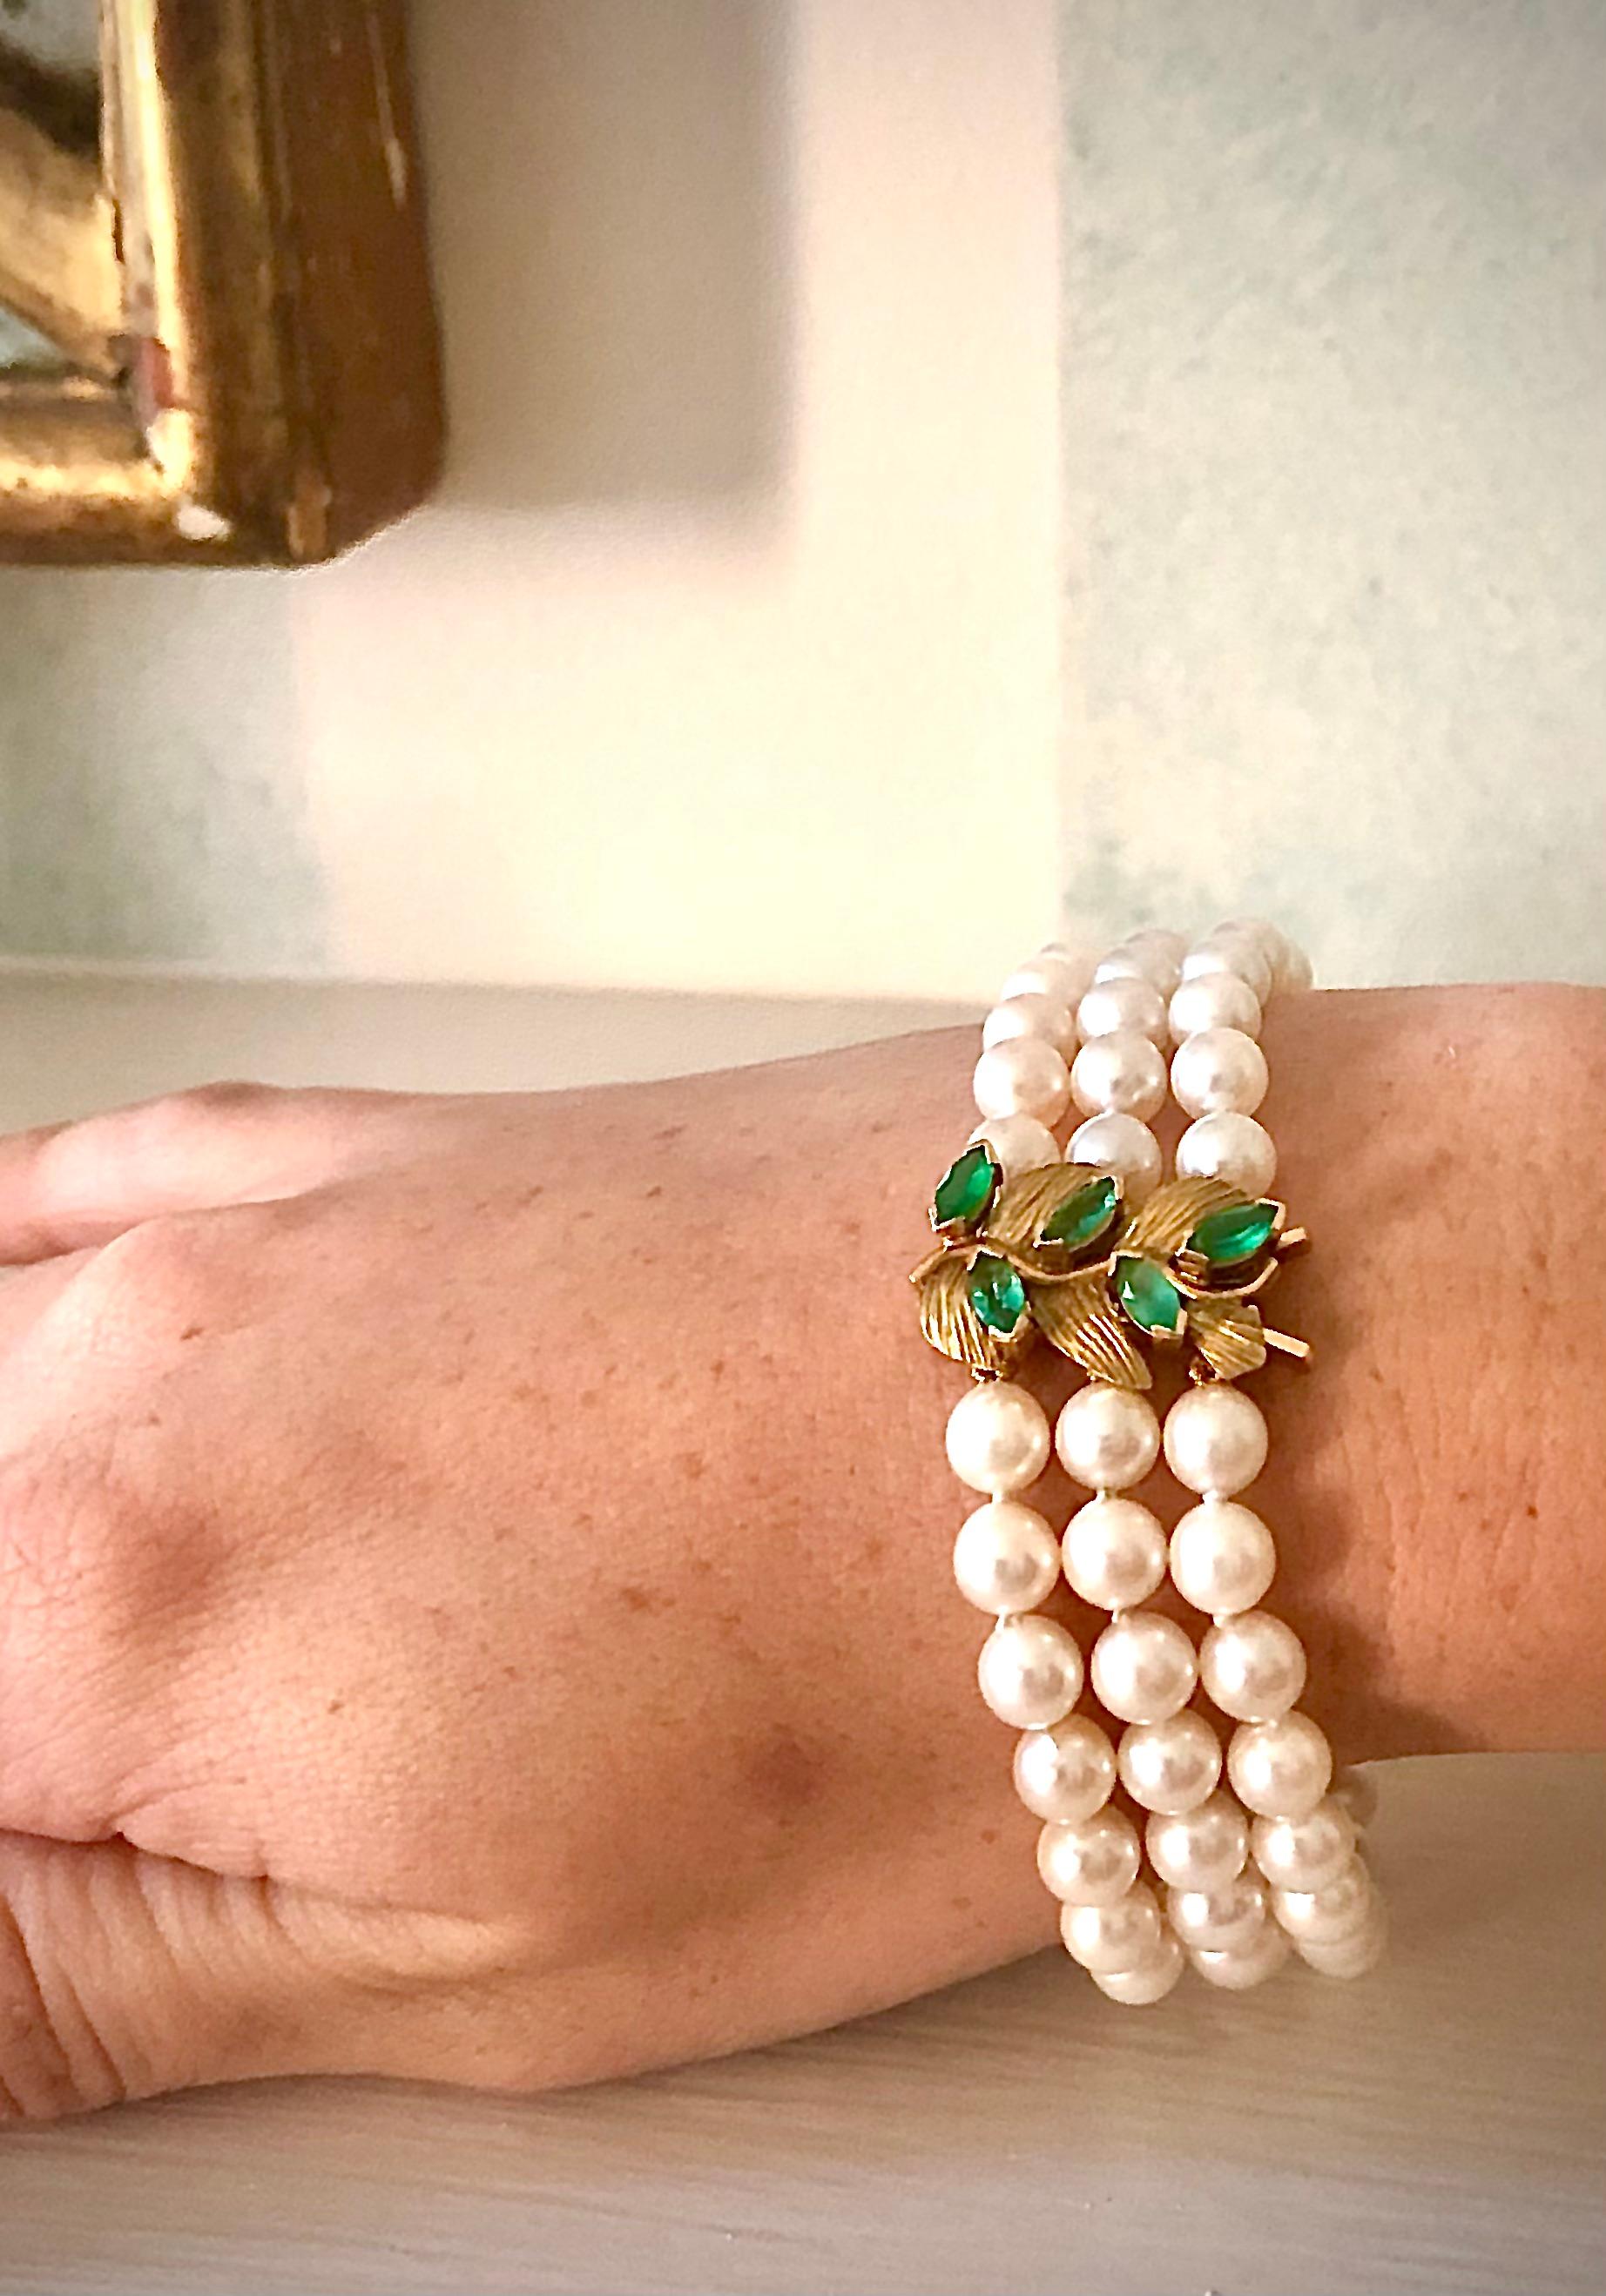 Schönes, kräftiges Armband mit drei Reihen außergewöhnlich glänzender, runder, hochwertiger Zuchtperlen. Die Perlen haben einen durchschnittlichen Durchmesser von 6,35 mm. Es gibt zwei relativ schwere goldene Trennstäbe.

Die Schließe ist sehr schön